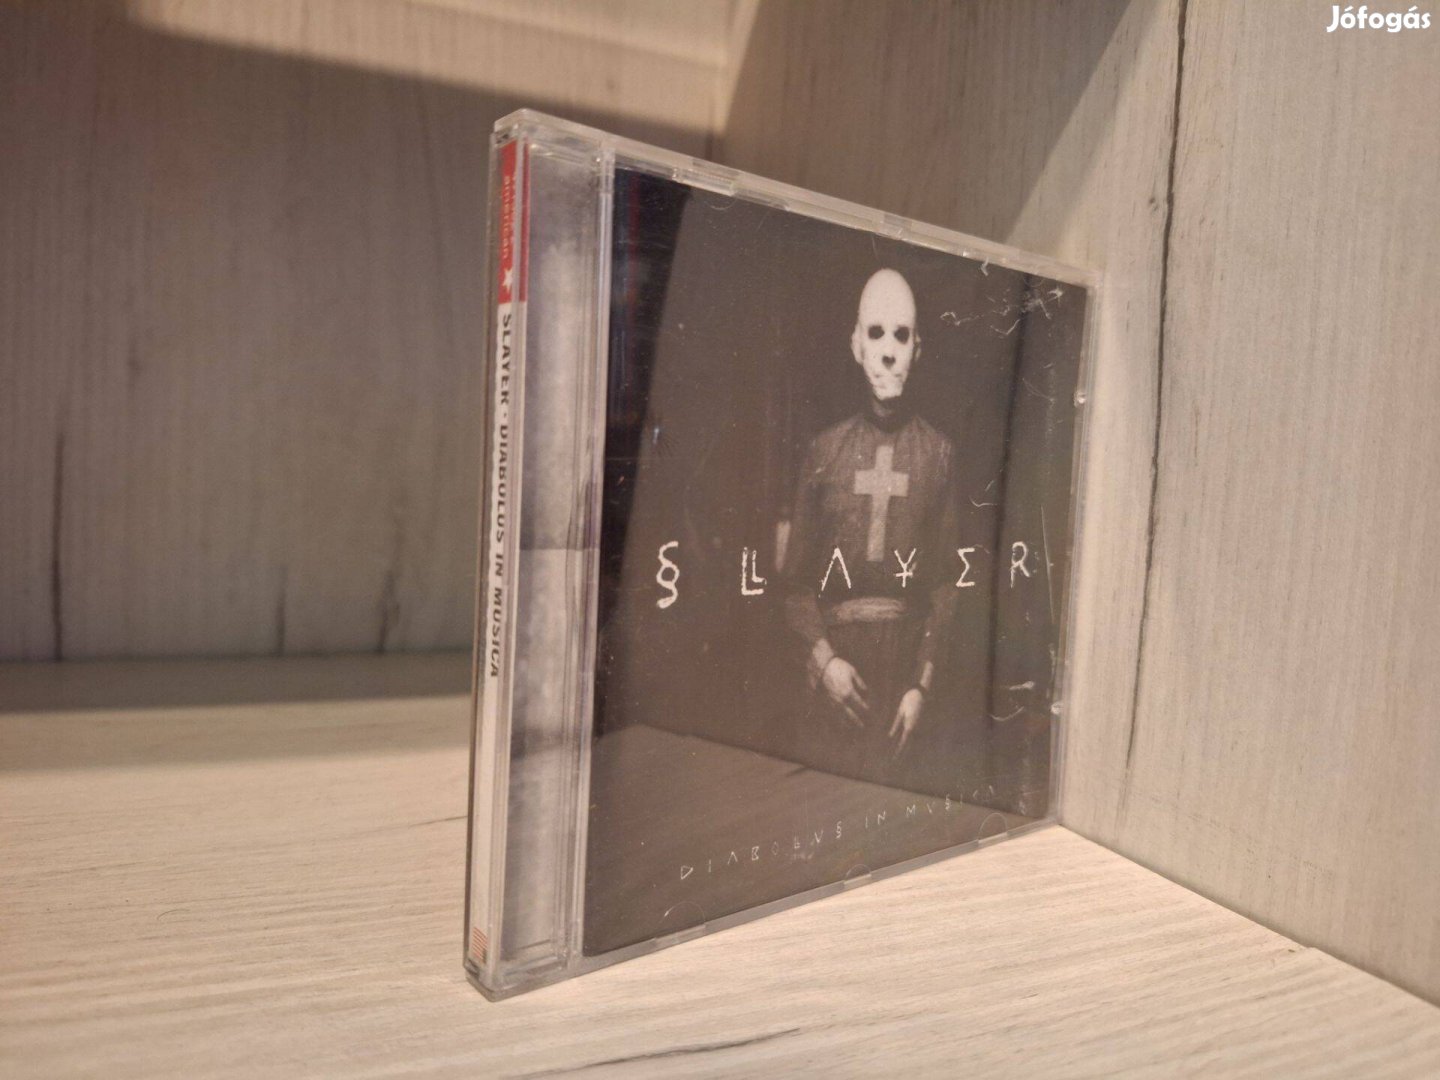 Slayer - Diabolus In Musica CD